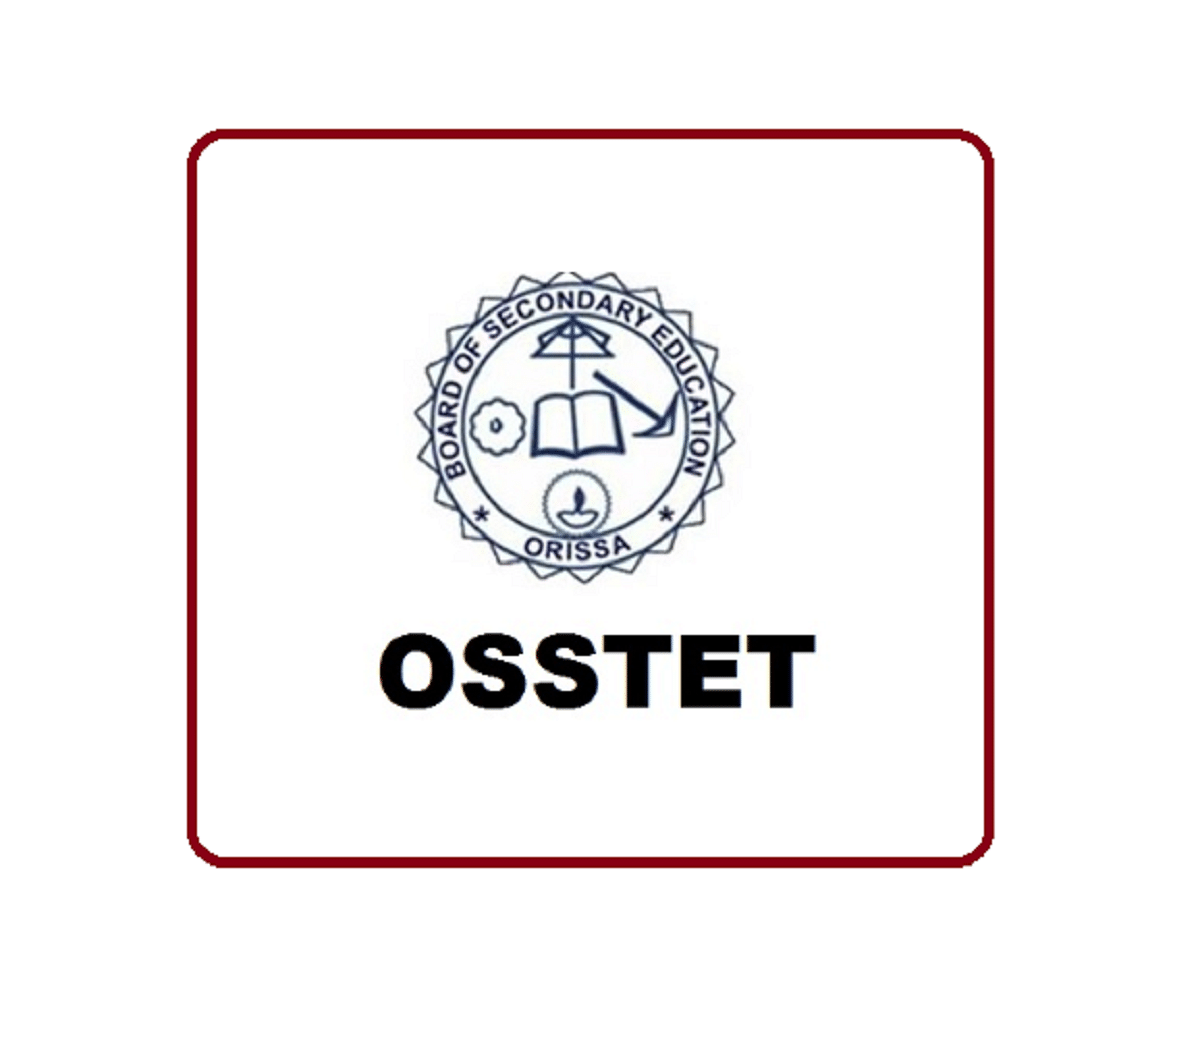 OSSTET 2019 Result Declared, Check Direct Link